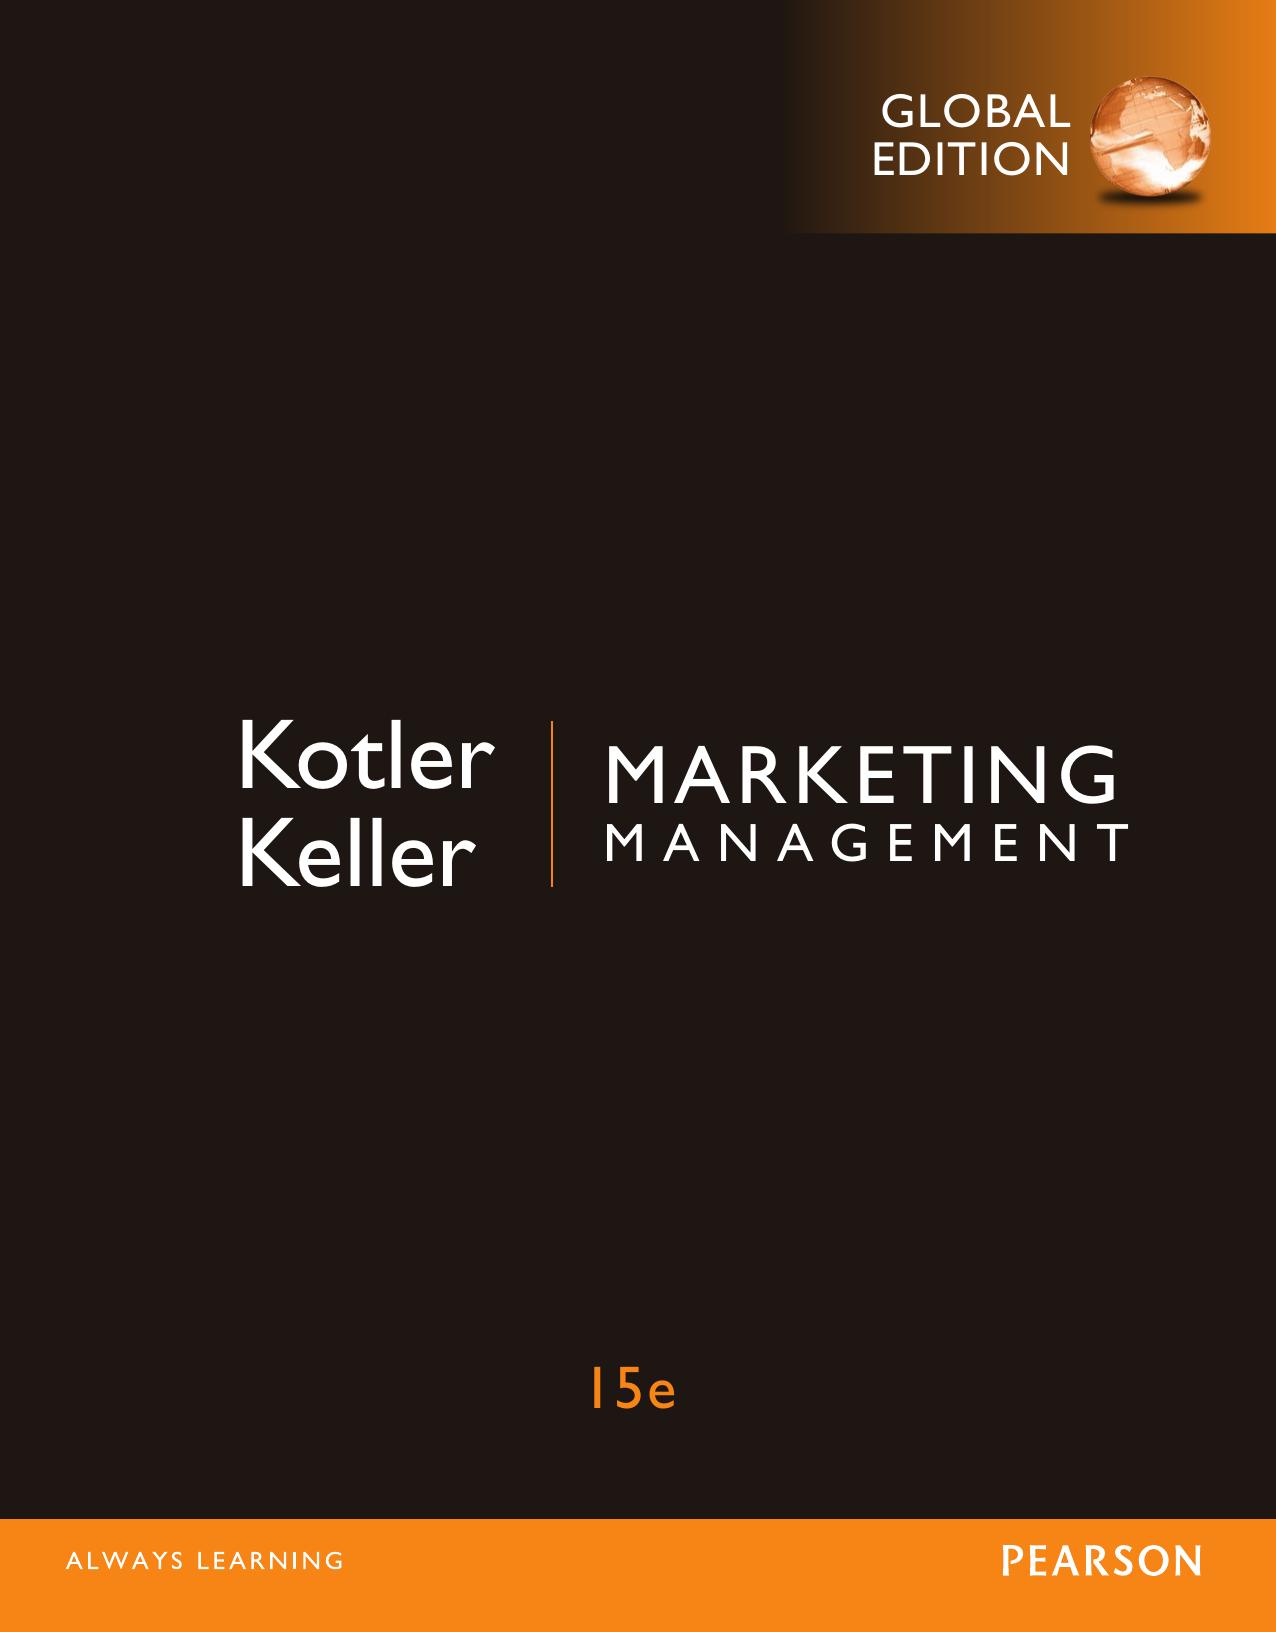 Marketing Management by Kevin Lane Keller, Philip Kotler 2016